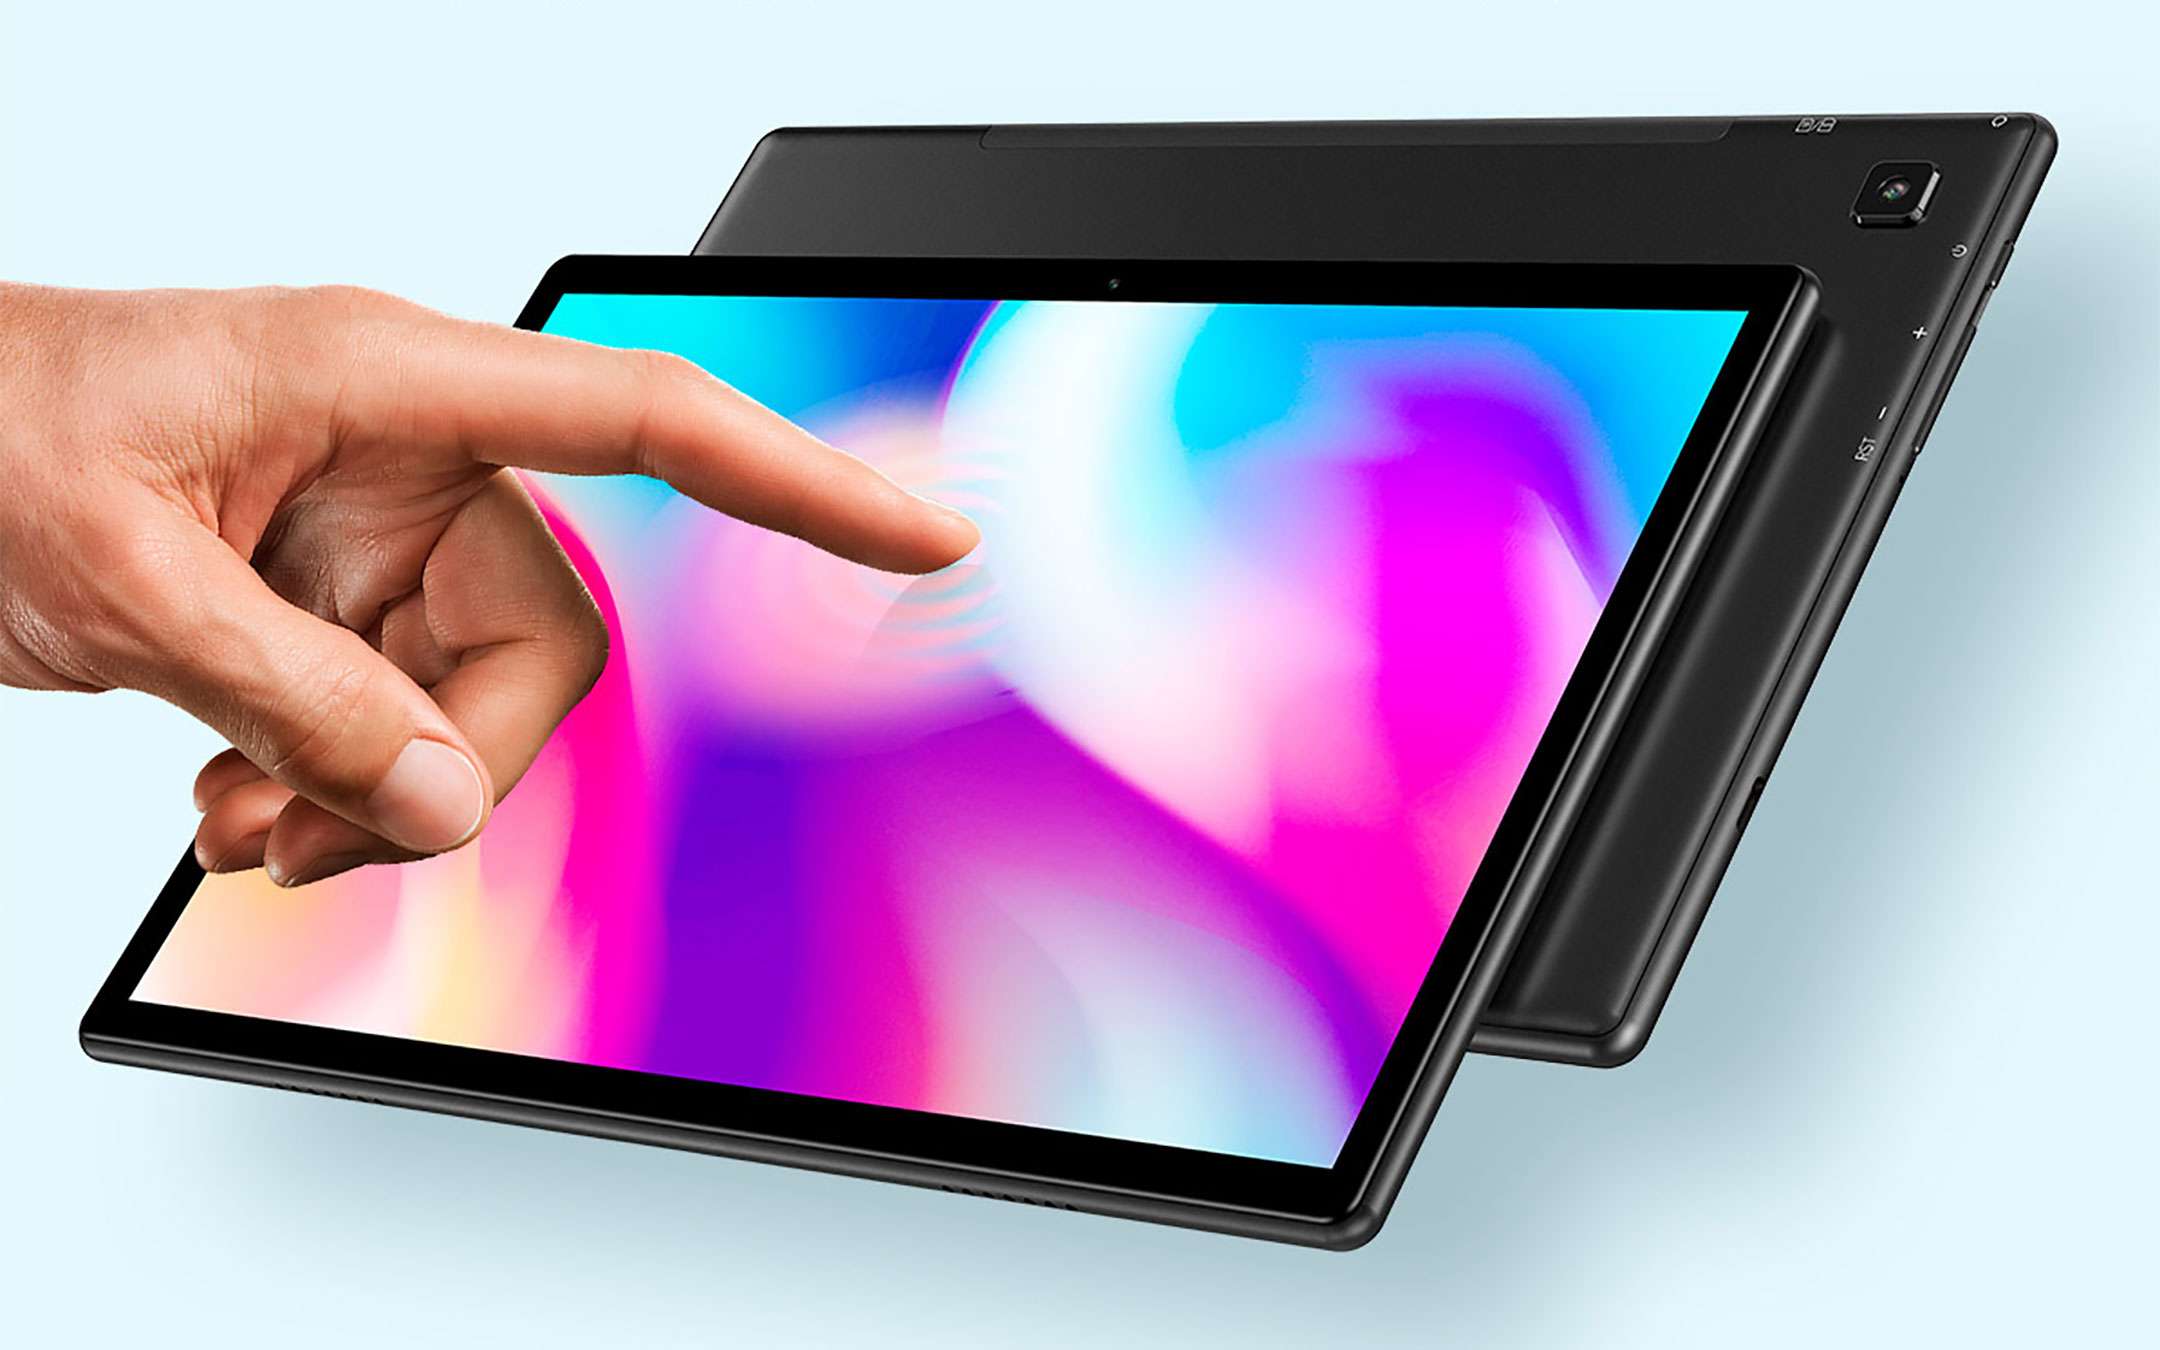 Black Friday 2021: i 5 migliori tablet in offerta (sconti fino al 43%)